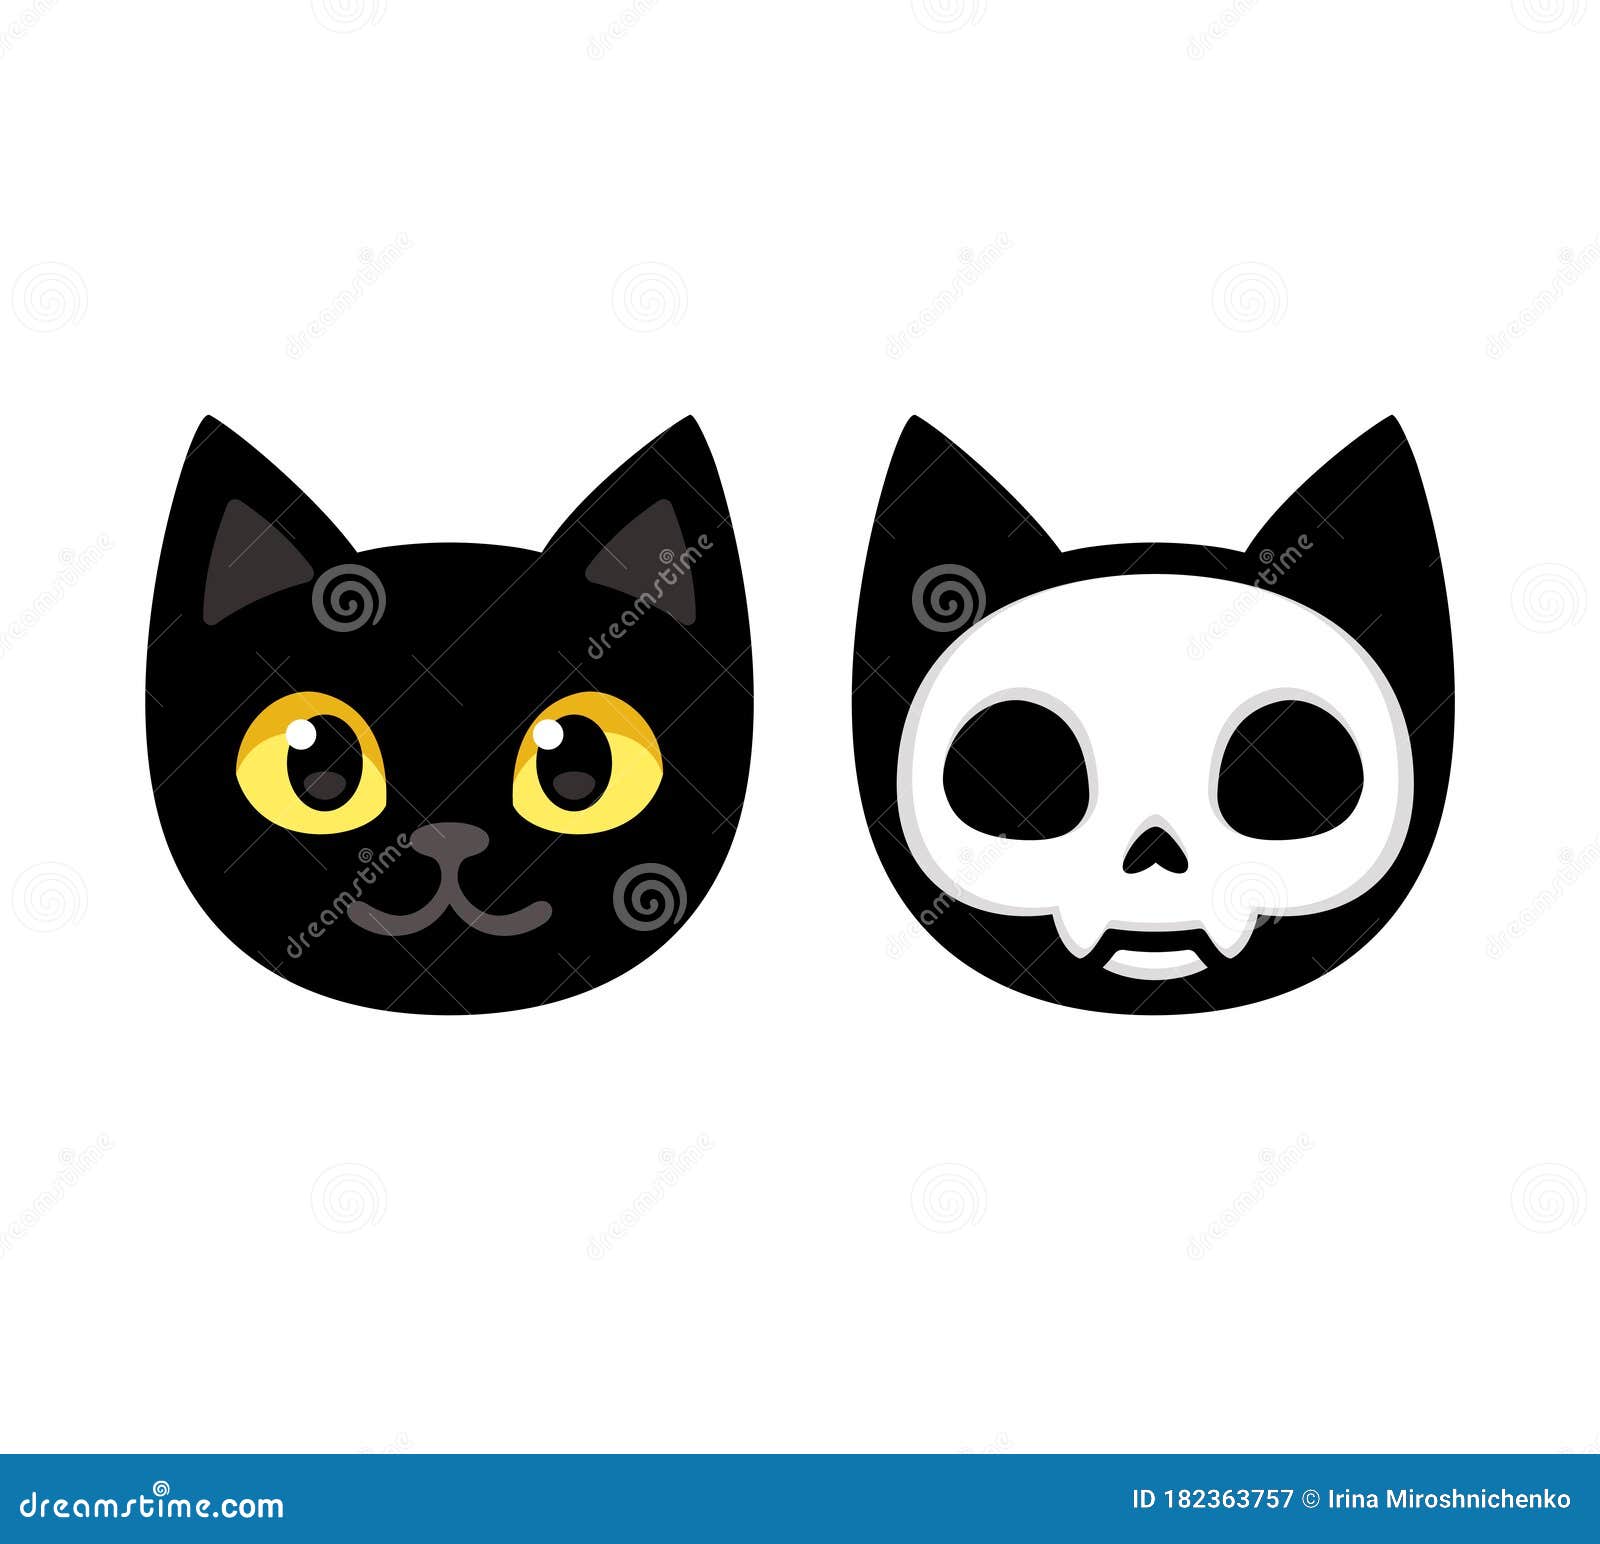 Cartoon cat head skull stock vector. Illustration of funny - 182363757